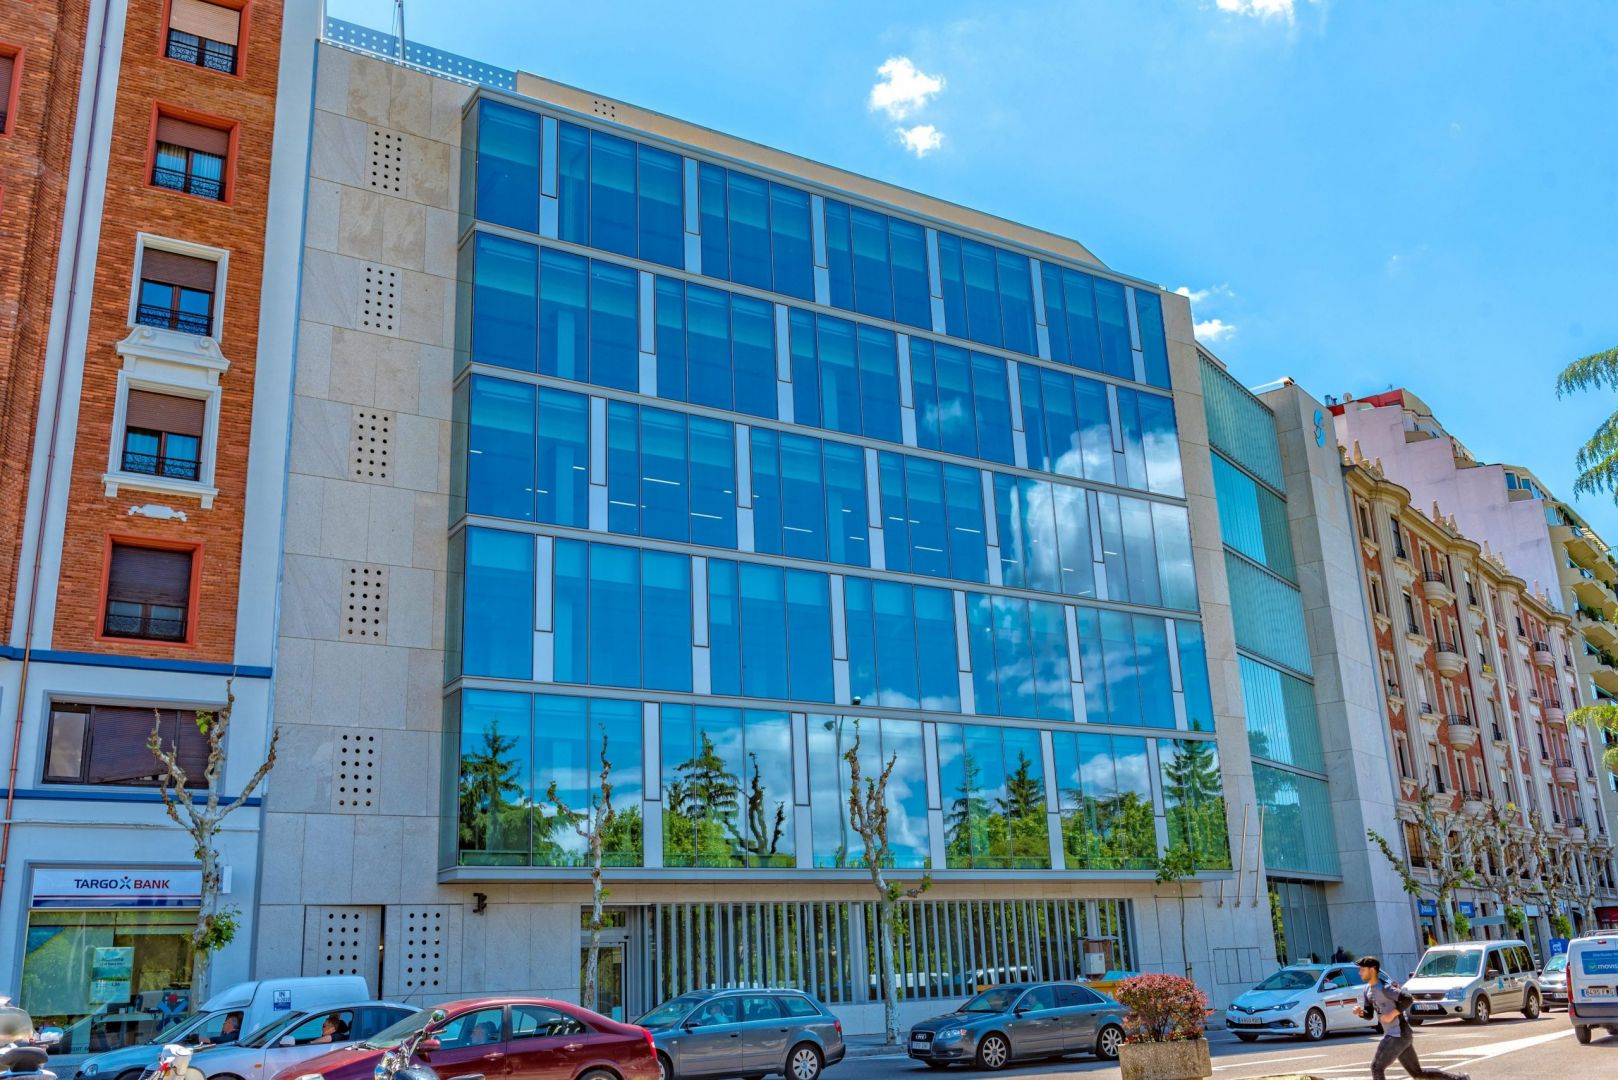 Vialterra culmina las obras de la sede del INSS de León